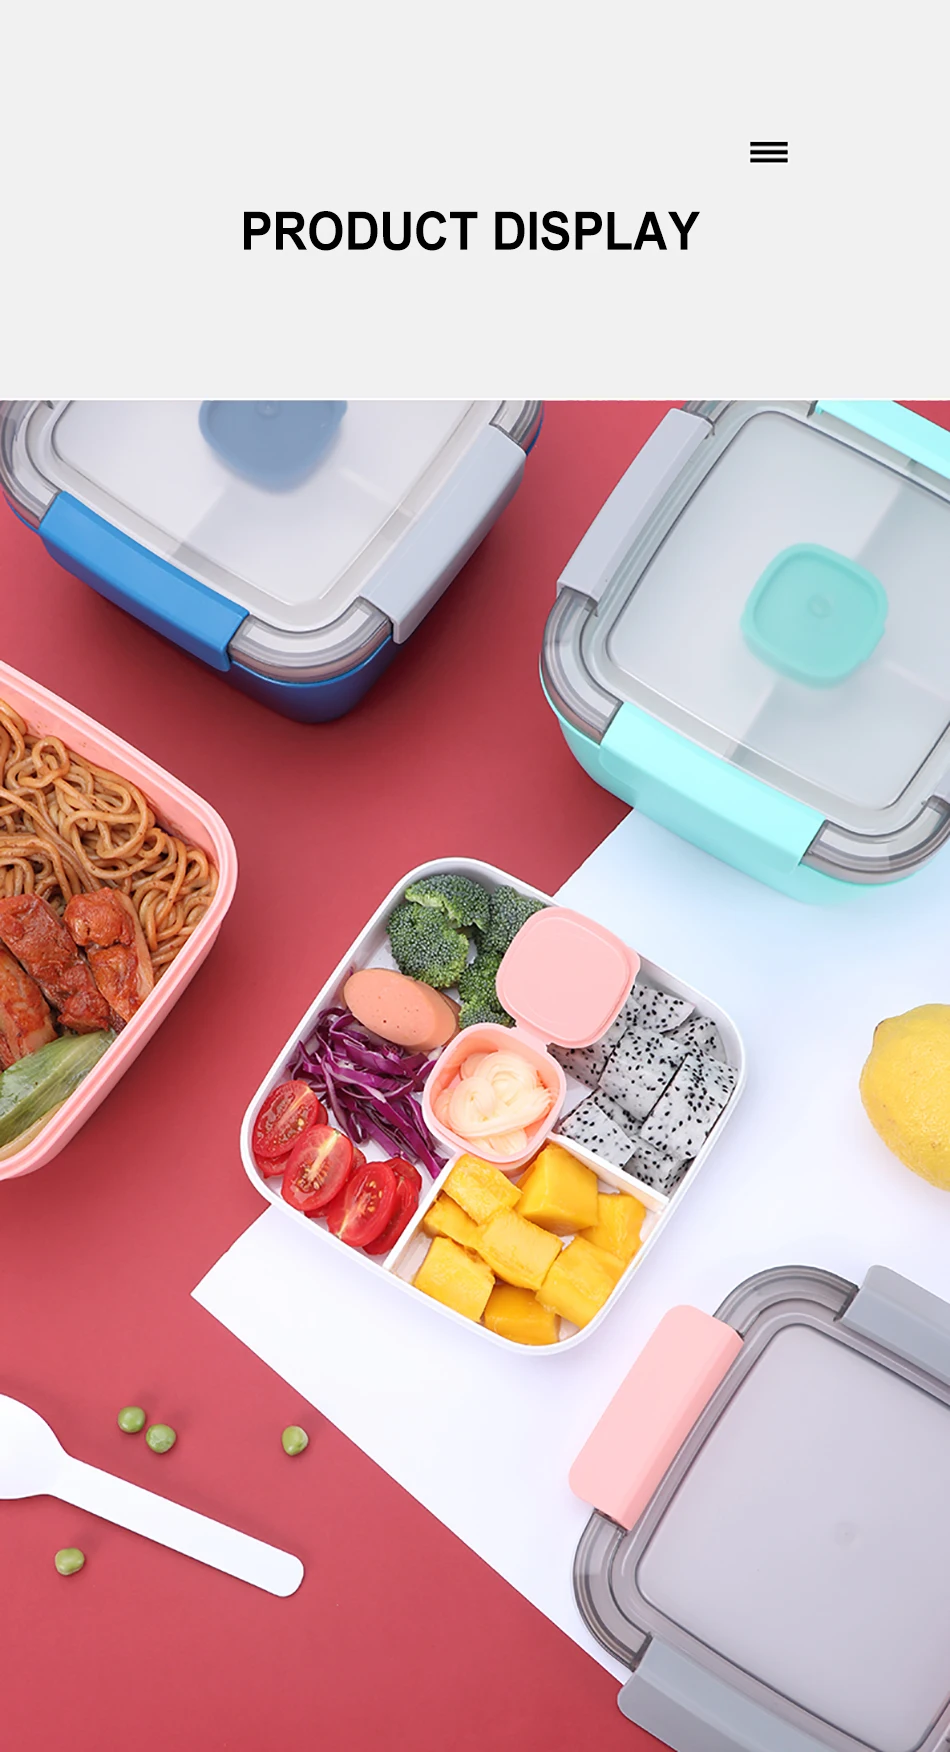 Baispo контейнер для пищи с подогревом для контейнер для обеда ребенку в японском стиле с отделением для посуды Дизайн кухонный пищевой контейнер Microwaveable